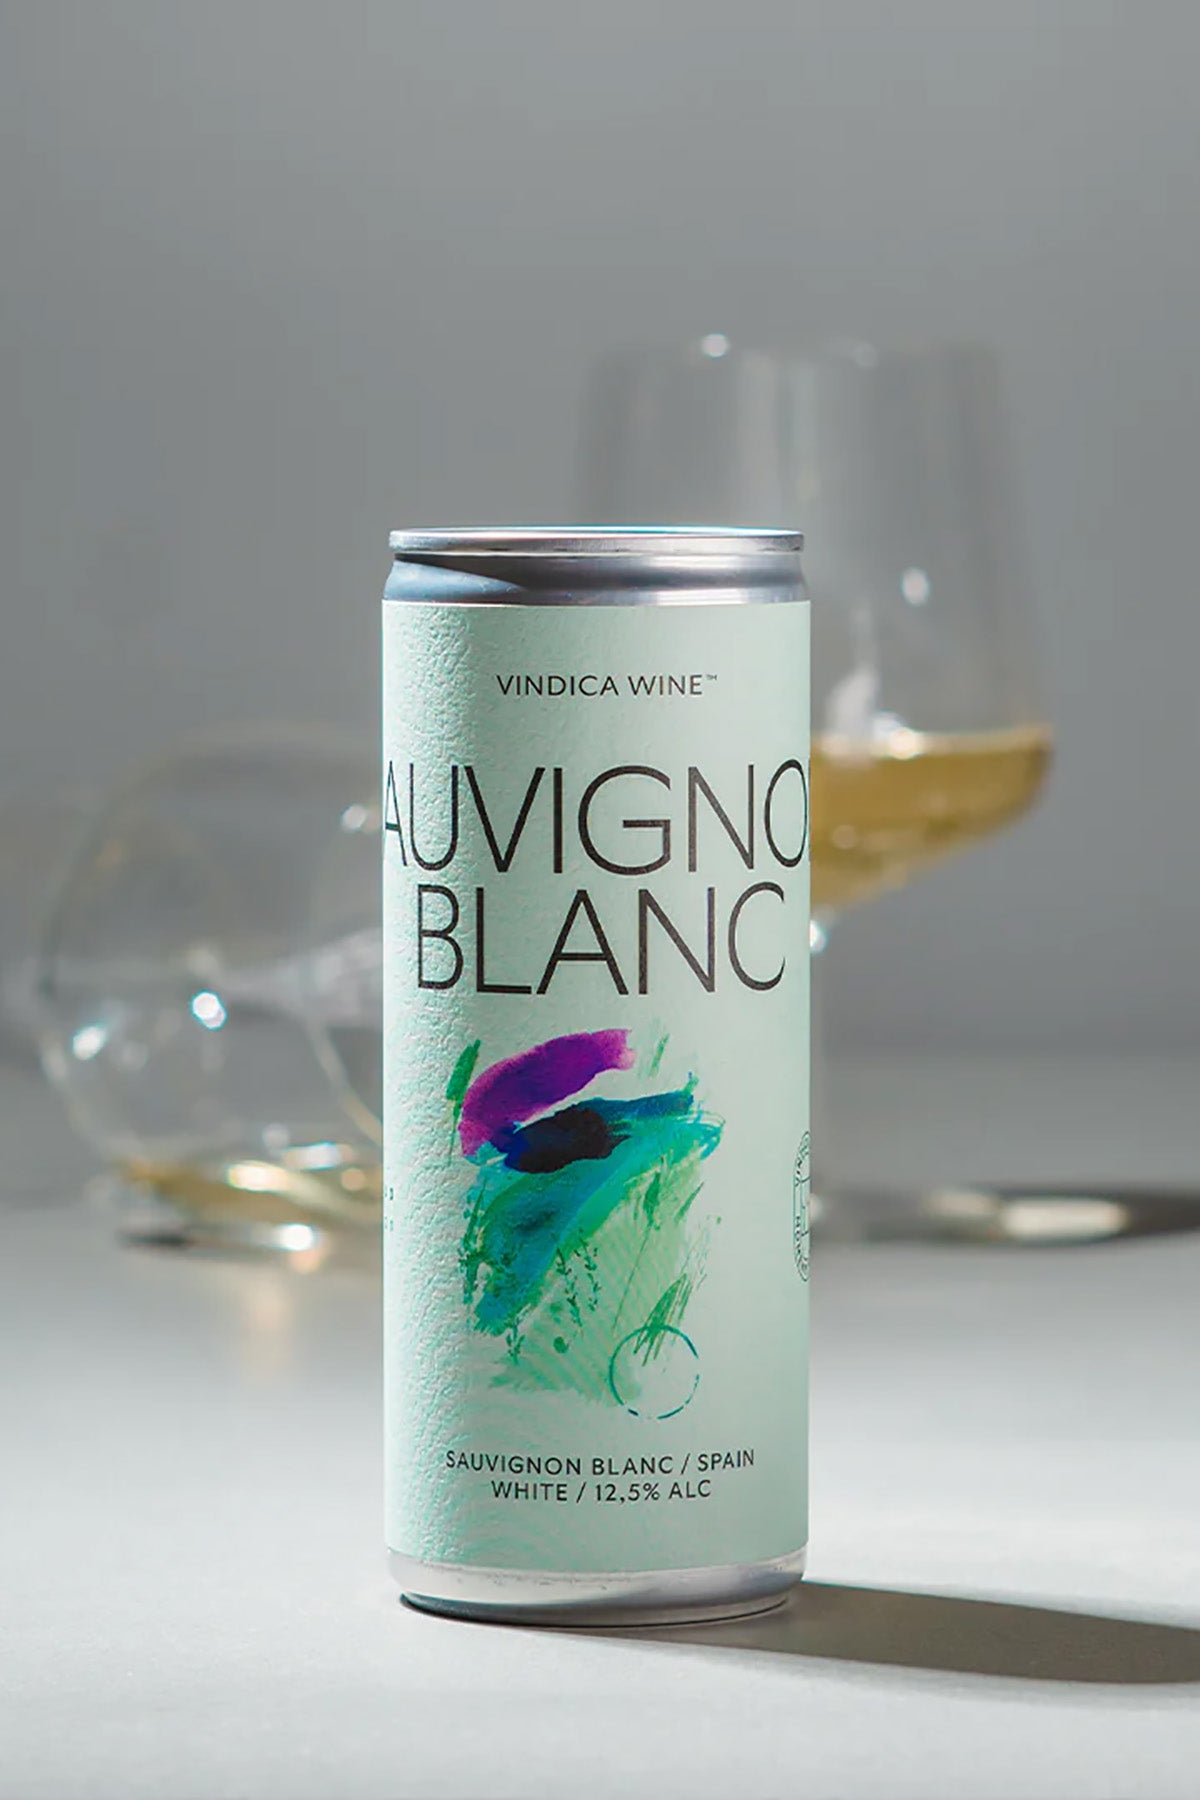 Weißwein - Sauvignon Blanc